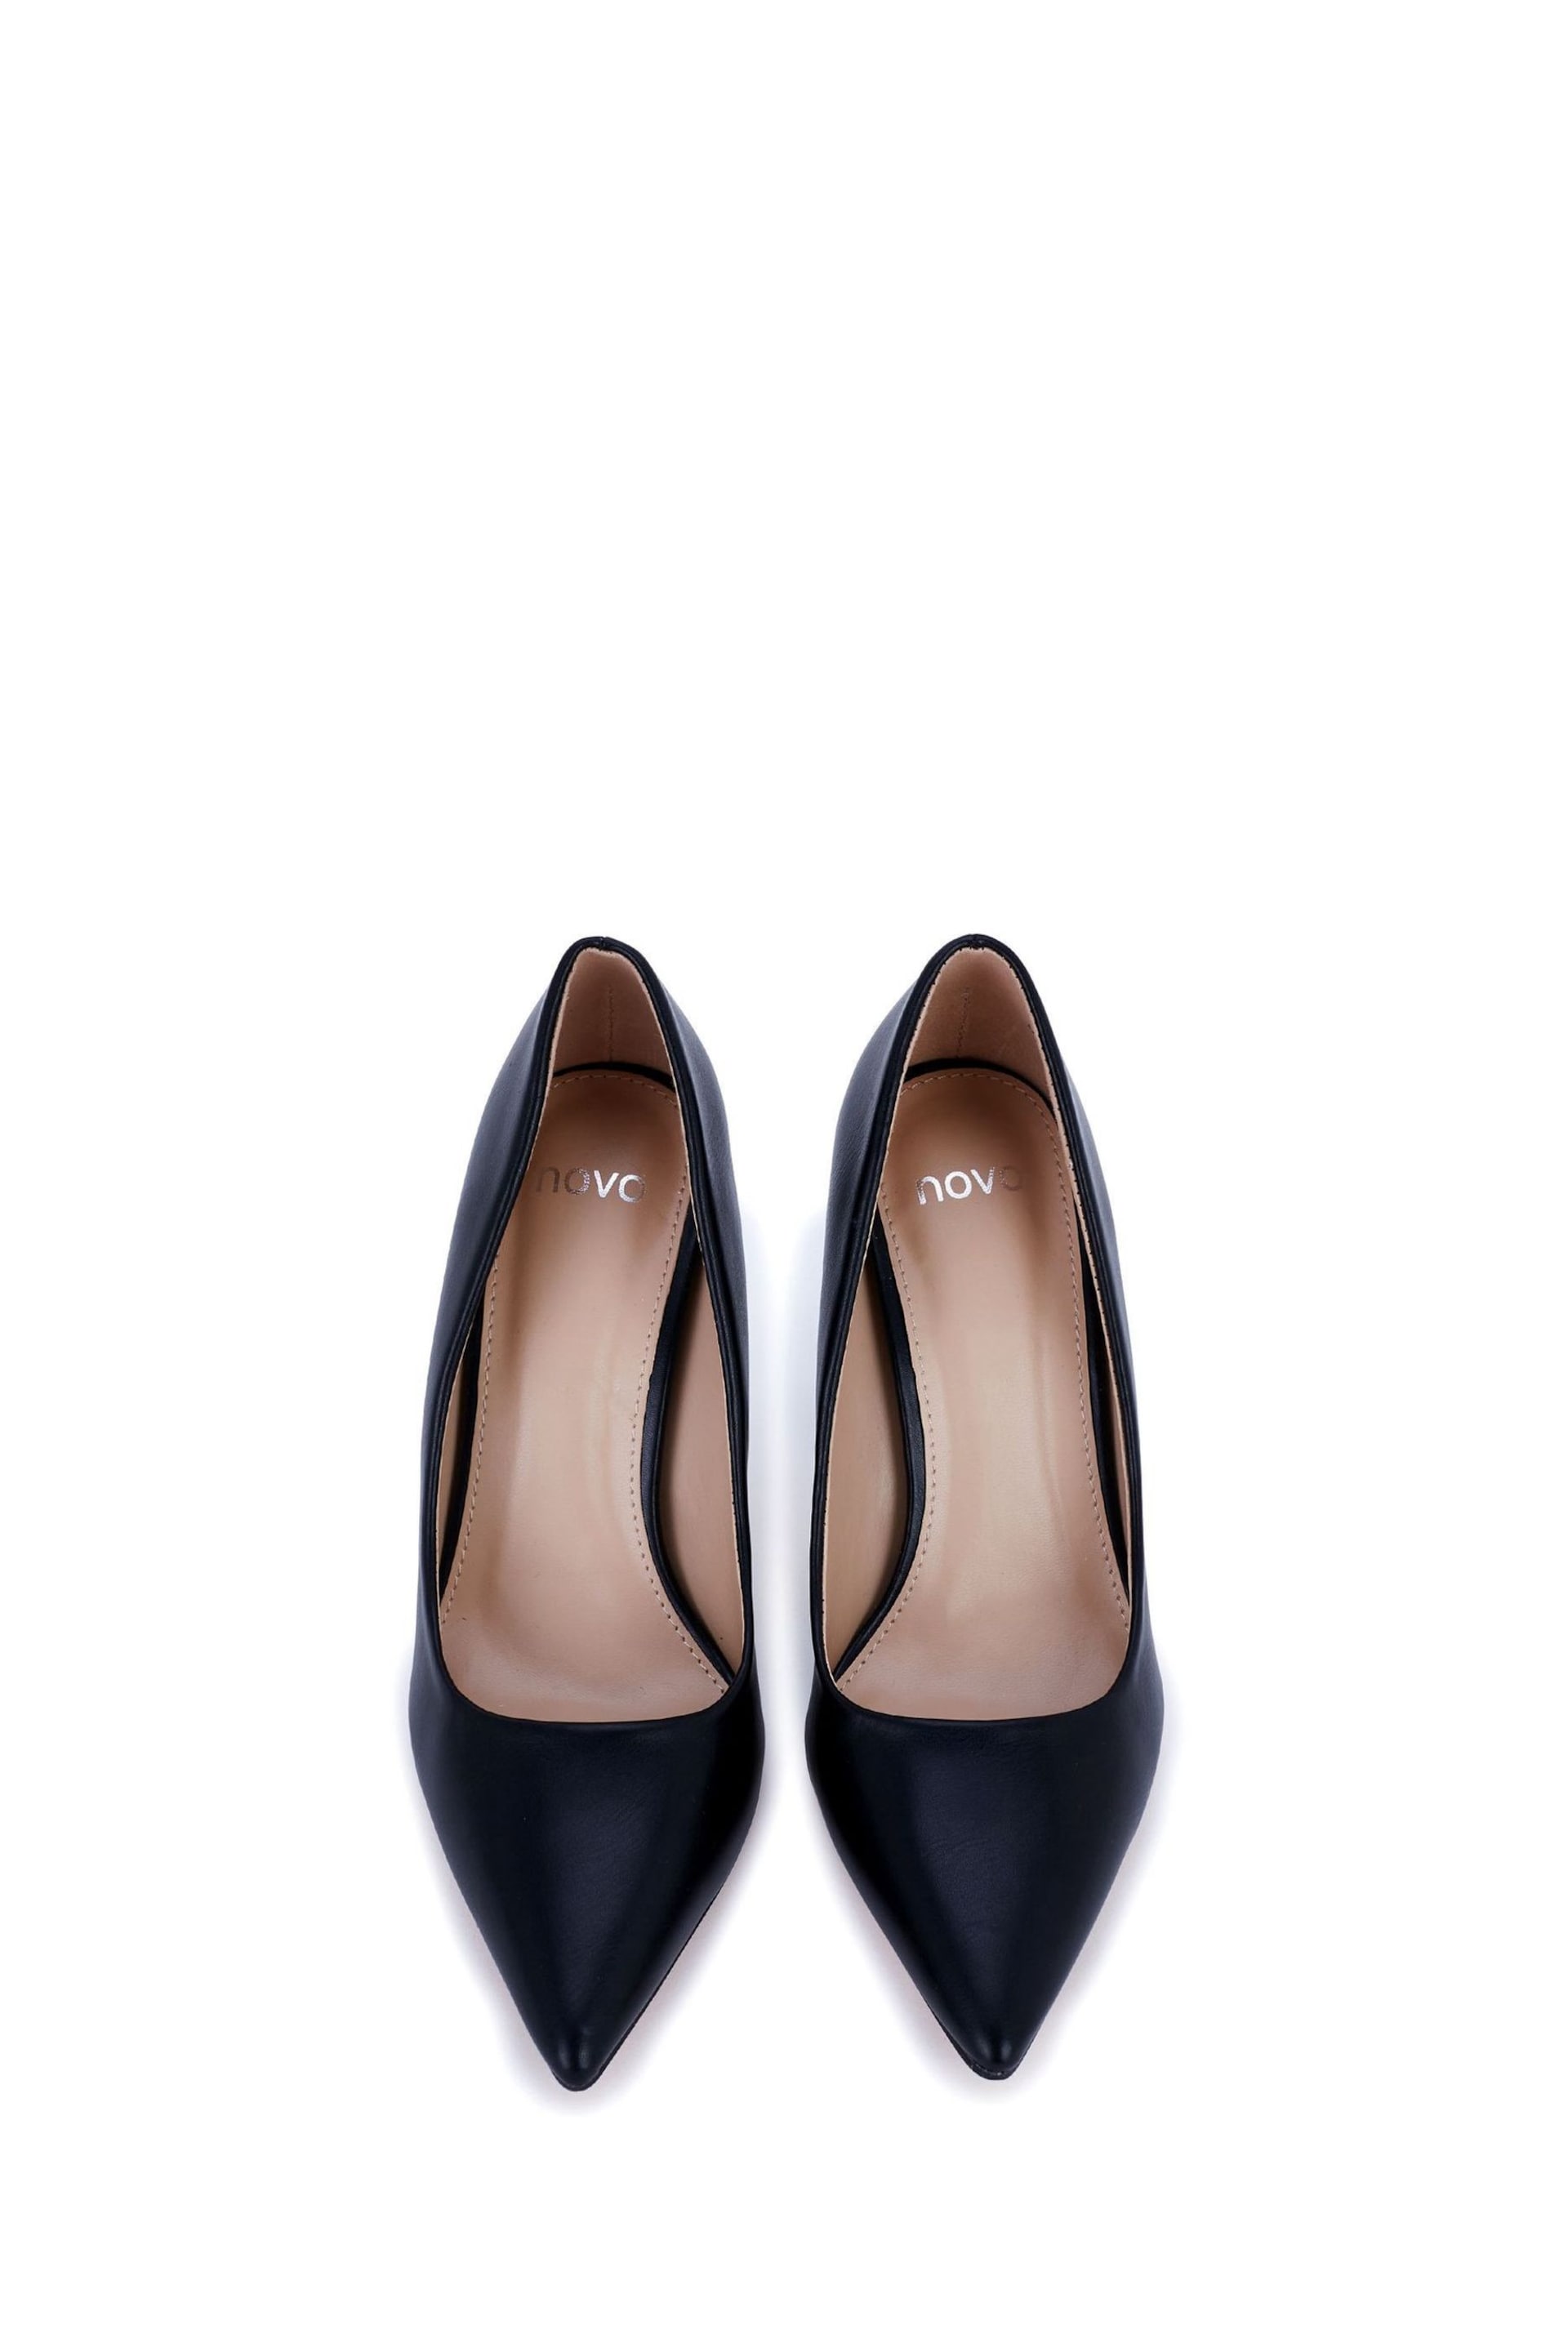 Novo Black Crissy Court Shoes - Image 4 of 5